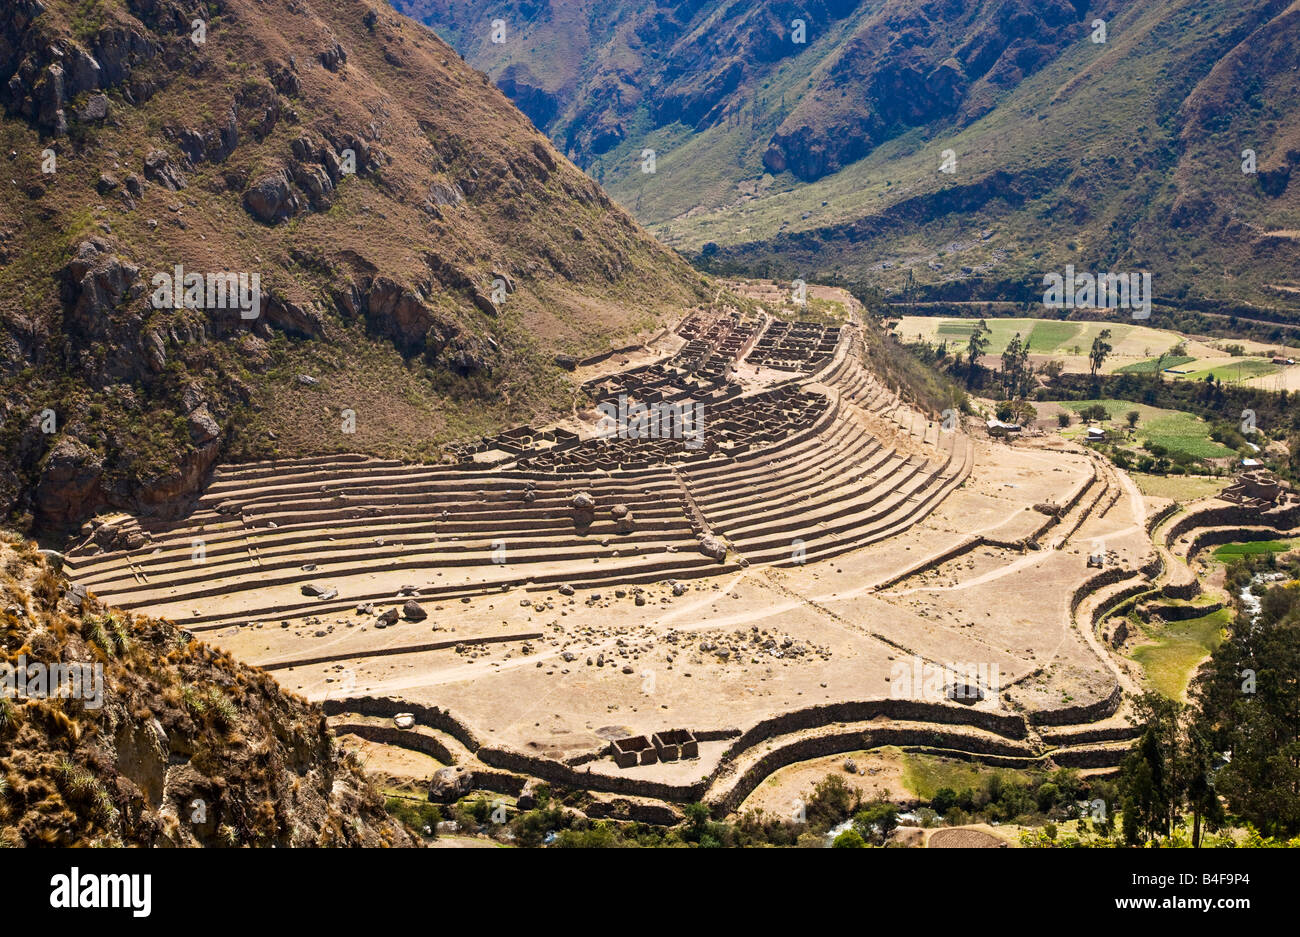 Vue de l'Inka ruine de LLactapata ou Patallacta prises à partir de la piste de l'Inca dans les Andes du Pérou Banque D'Images